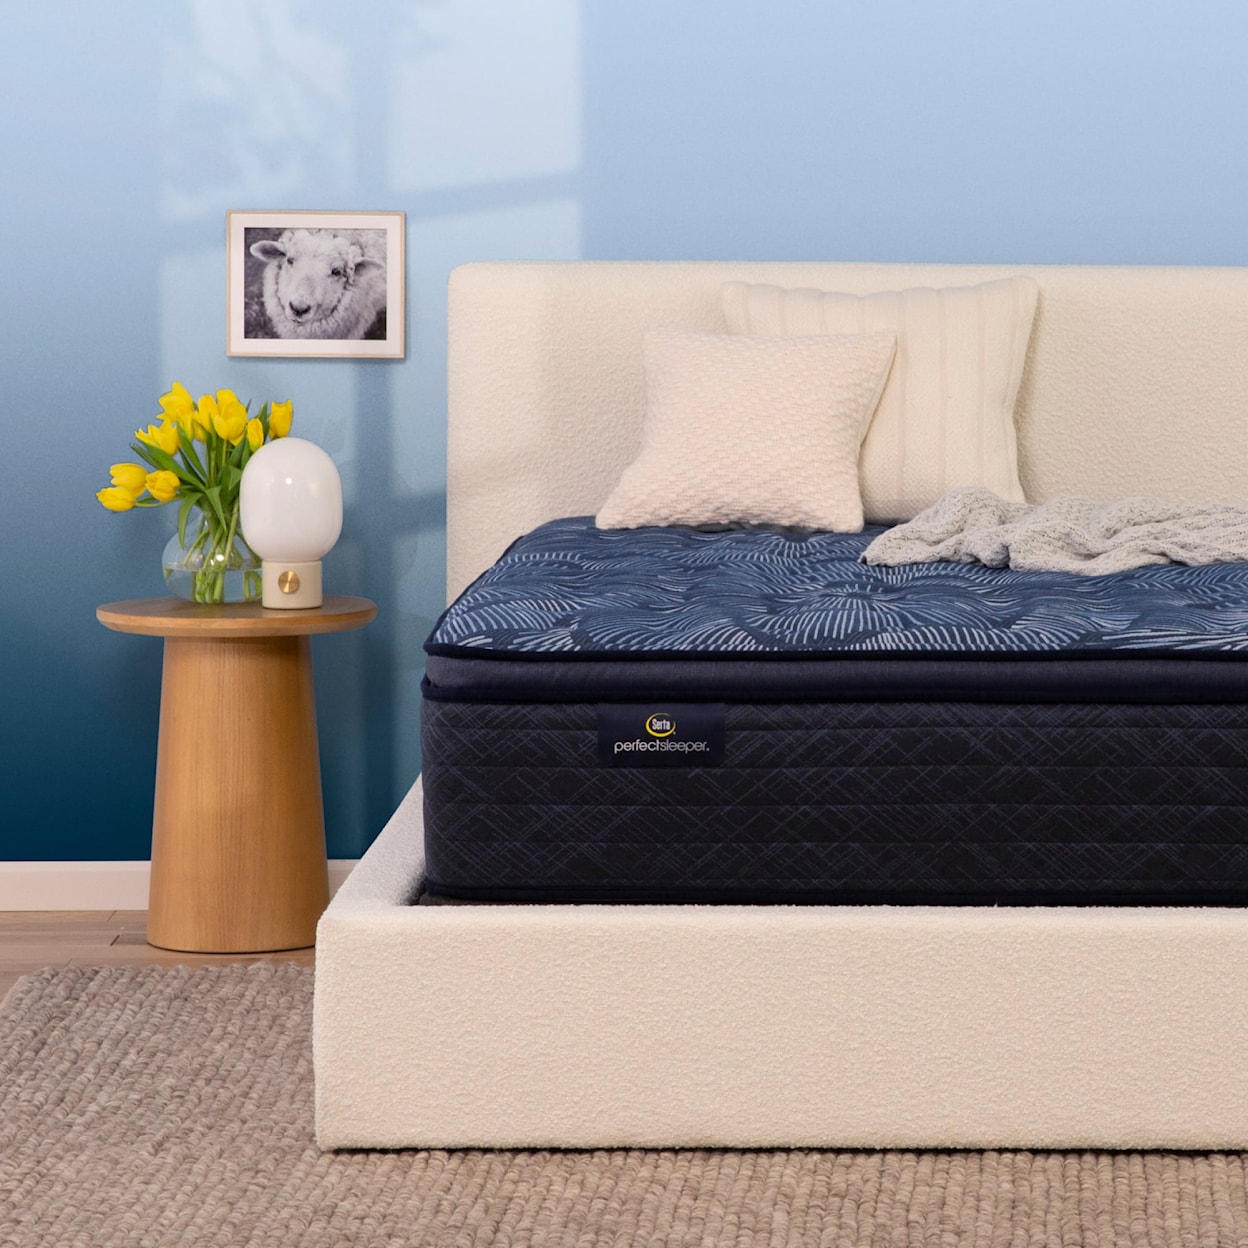 Serta Serta Perfect Sleeper Cobalt Calm 14.5" Medium Pillow Top Mattress - California King